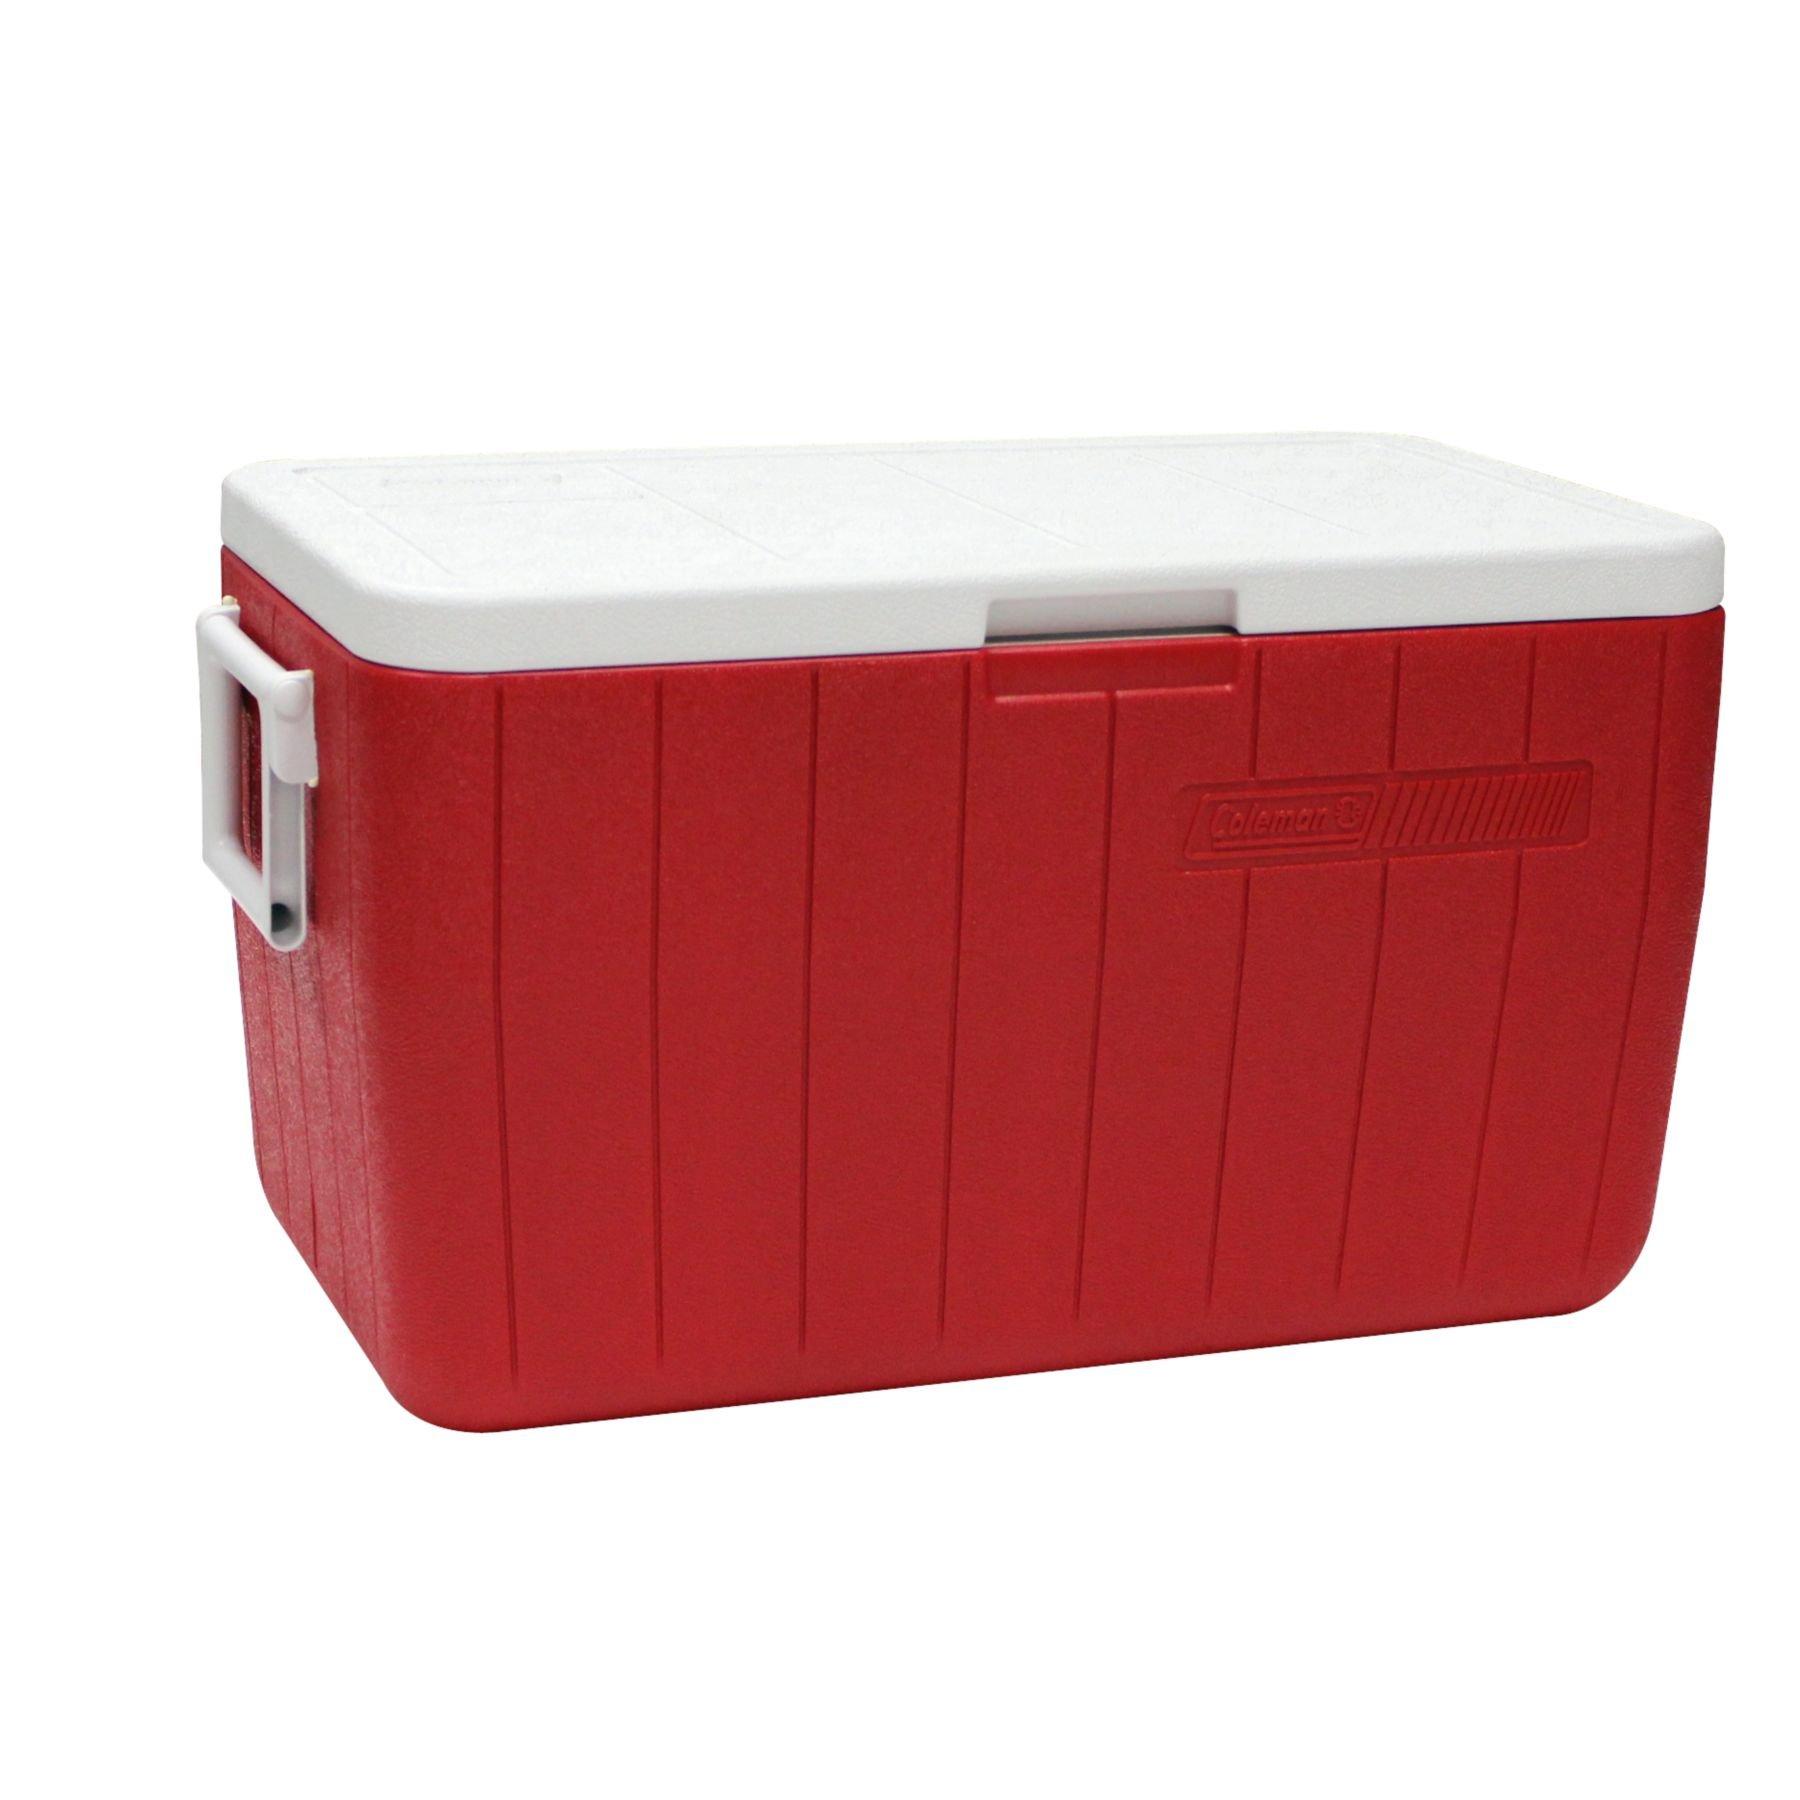 COLEMAN COOL BOX 48QT RED